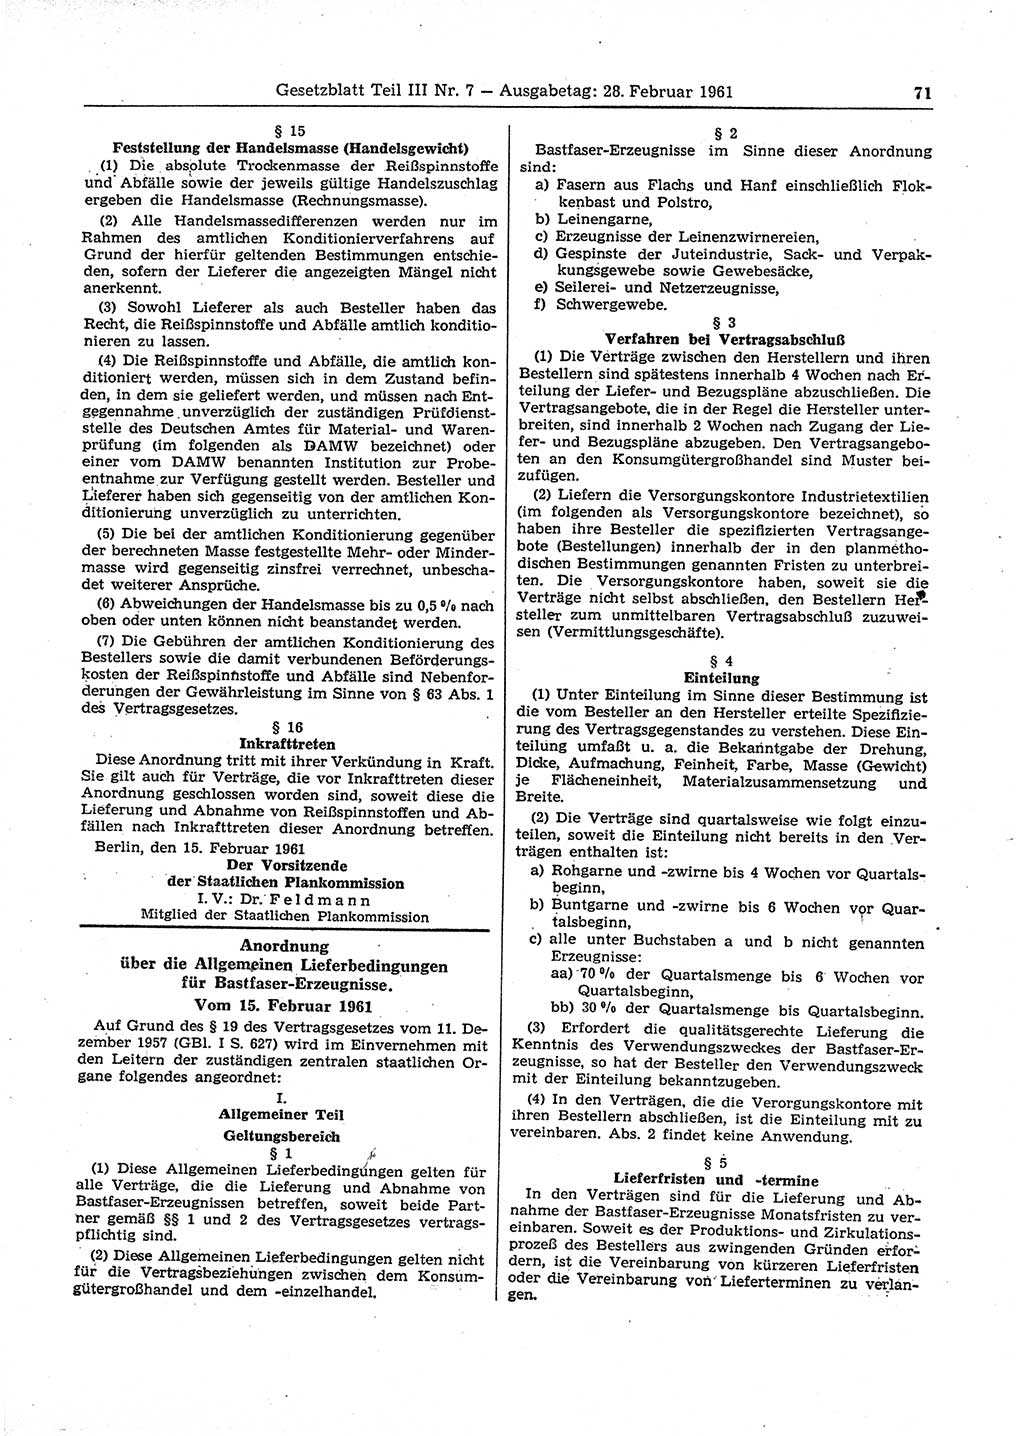 Gesetzblatt (GBl.) der Deutschen Demokratischen Republik (DDR) Teil ⅠⅠⅠ 1961, Seite 71 (GBl. DDR ⅠⅠⅠ 1961, S. 71)